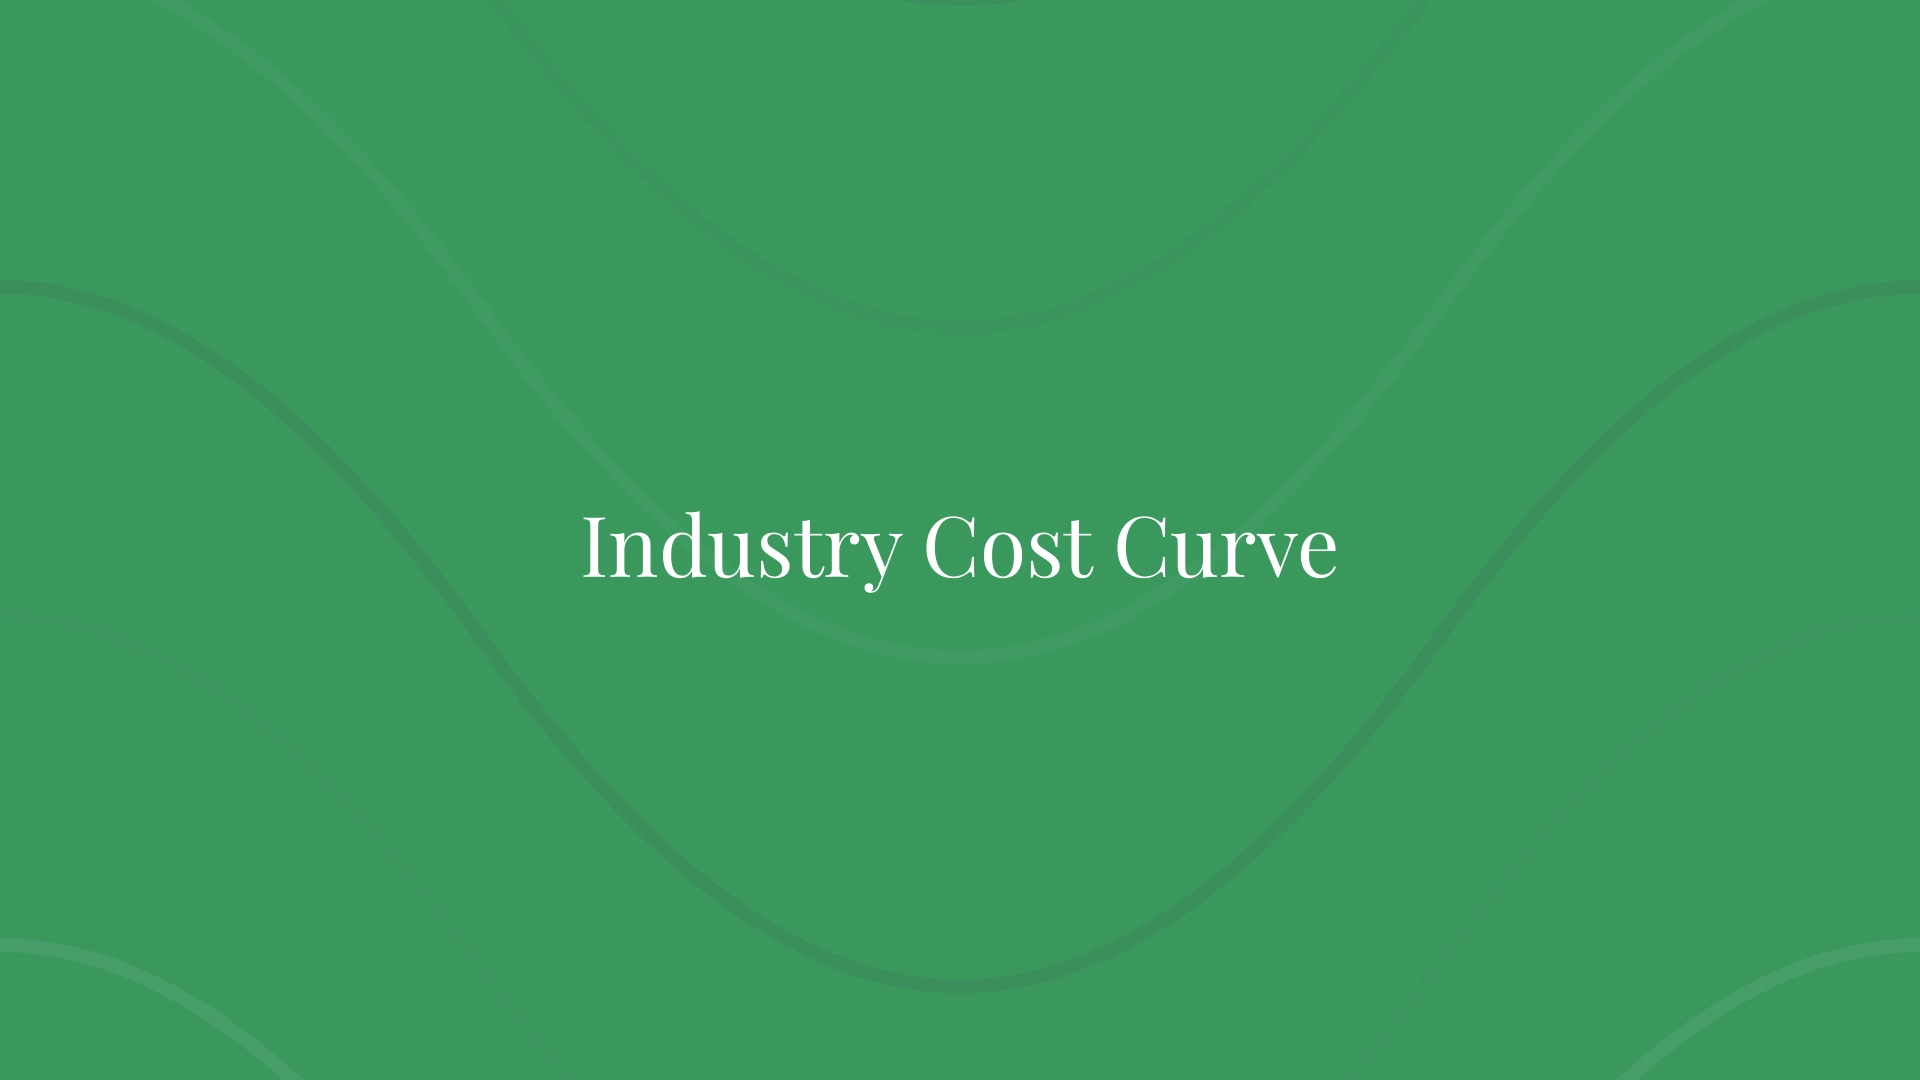 Curva de costos de la industria